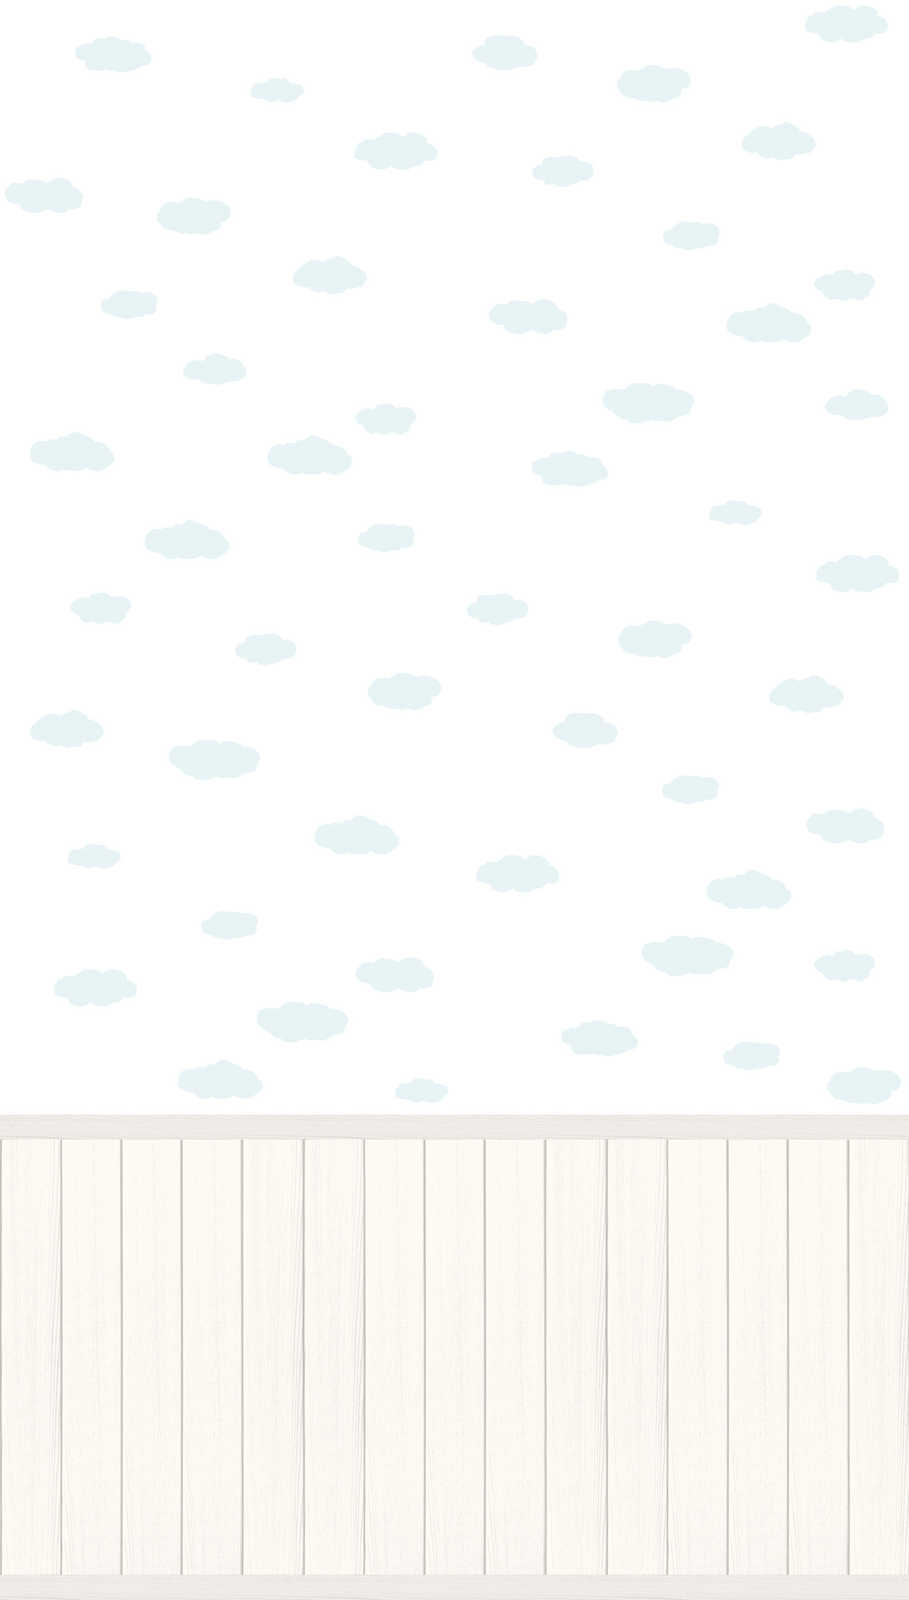             Carta da parati non tessuta con bordo a zoccolo effetto legno e motivo a nuvole - bianco, blu, grigio
        